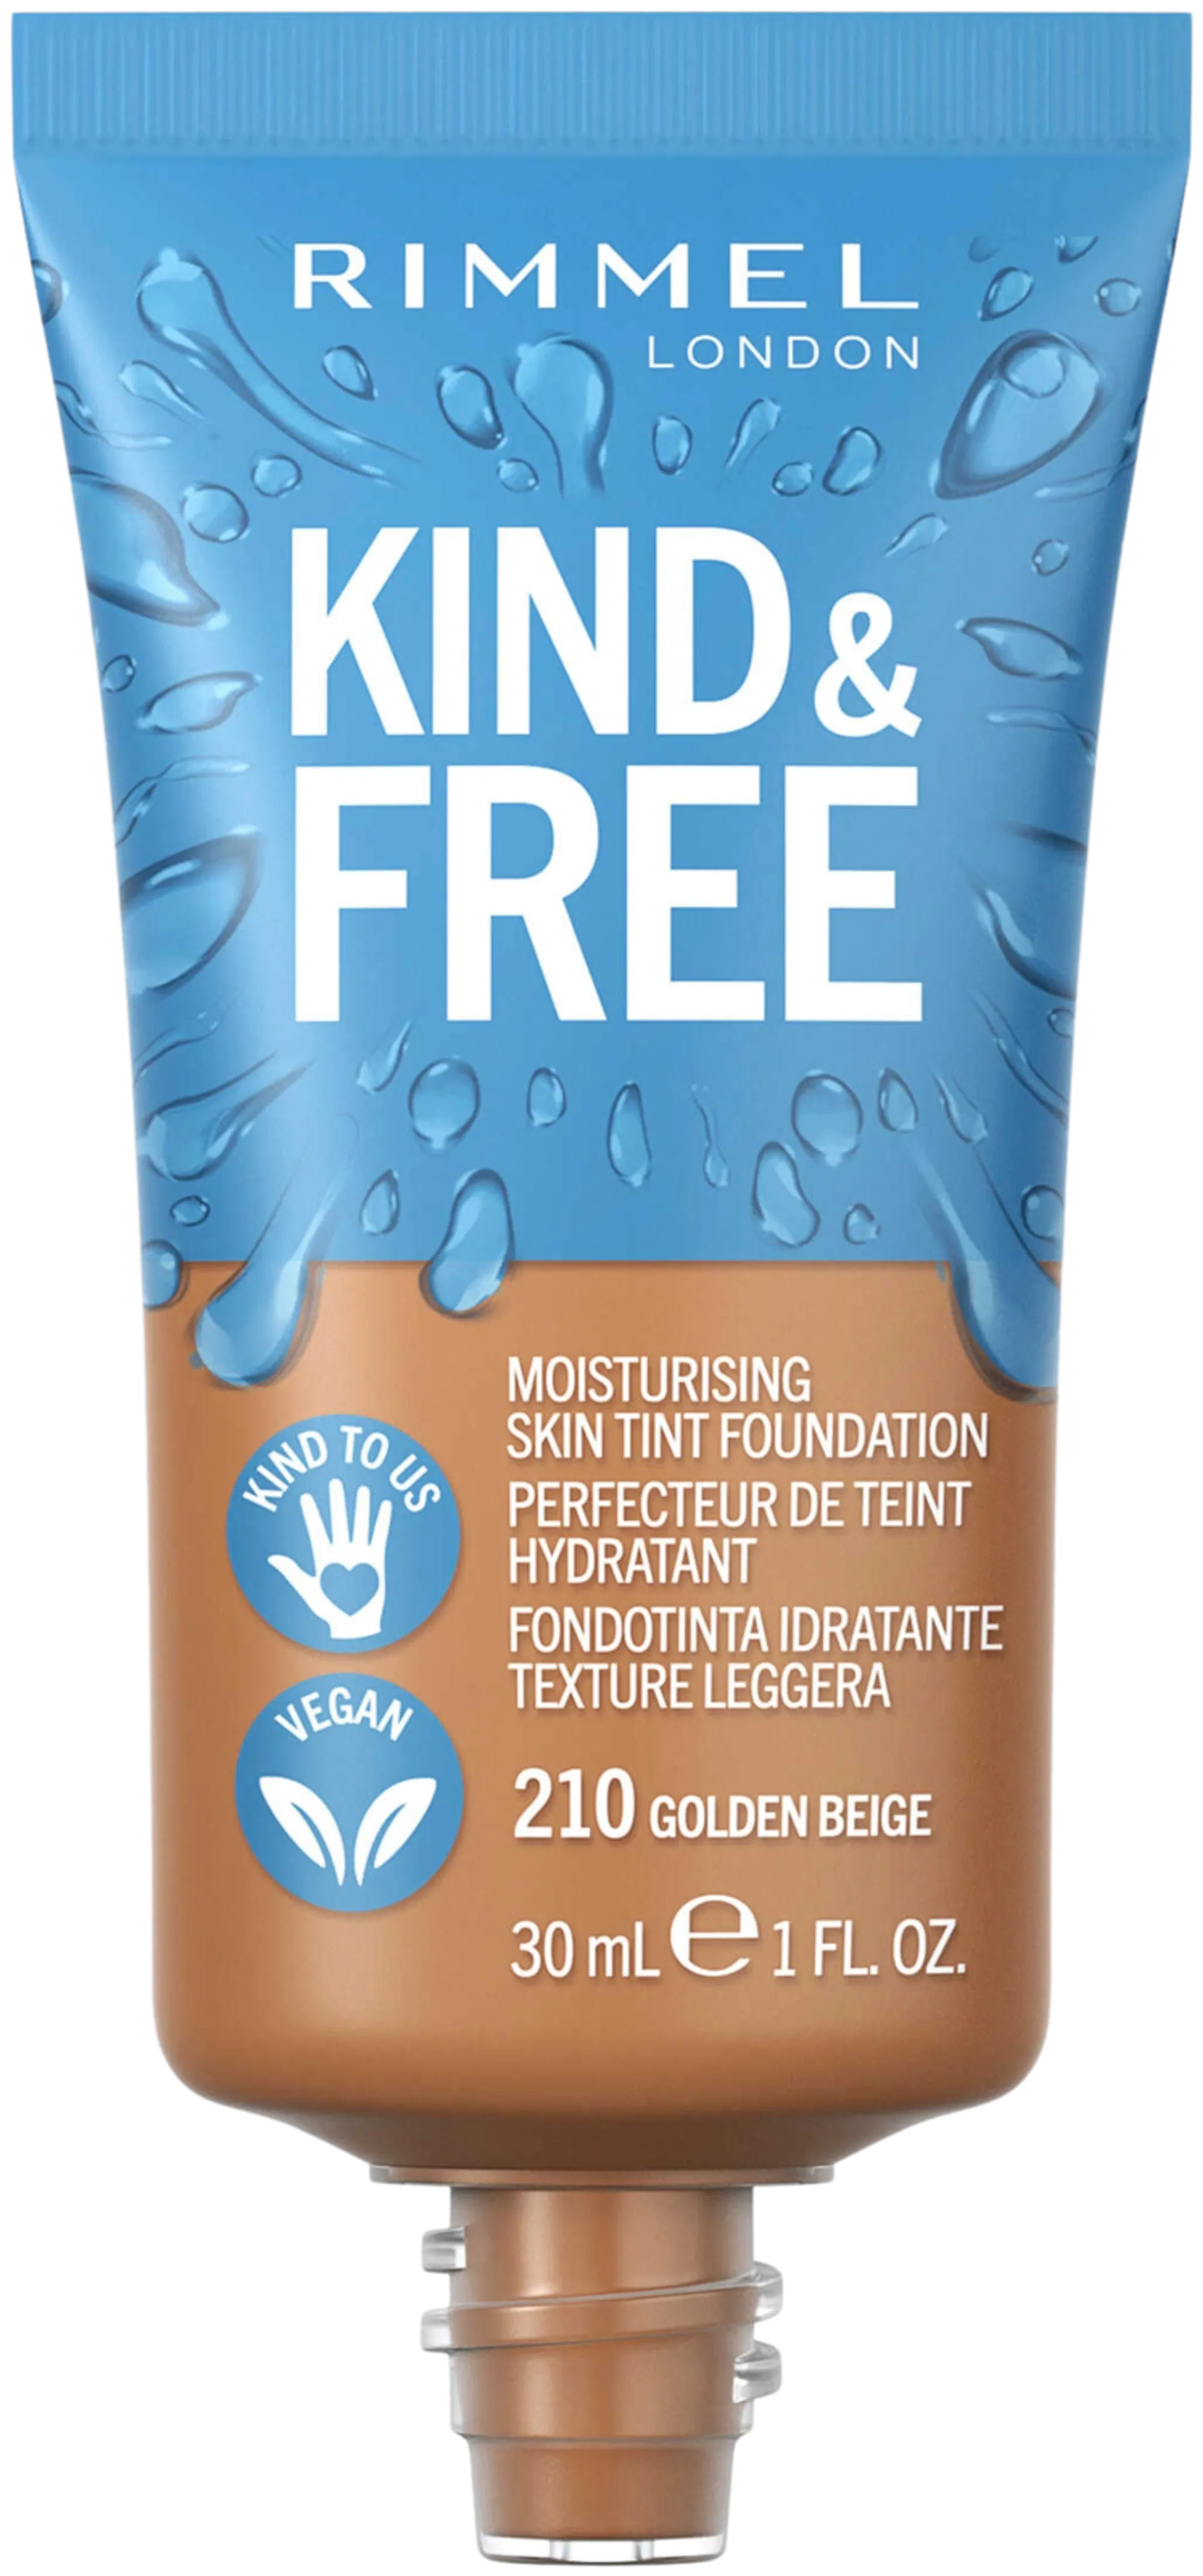 Rimmel Kind & Free Skin Tint Foundation 30 ml, 210 Golden Beige meikkivoide - 2